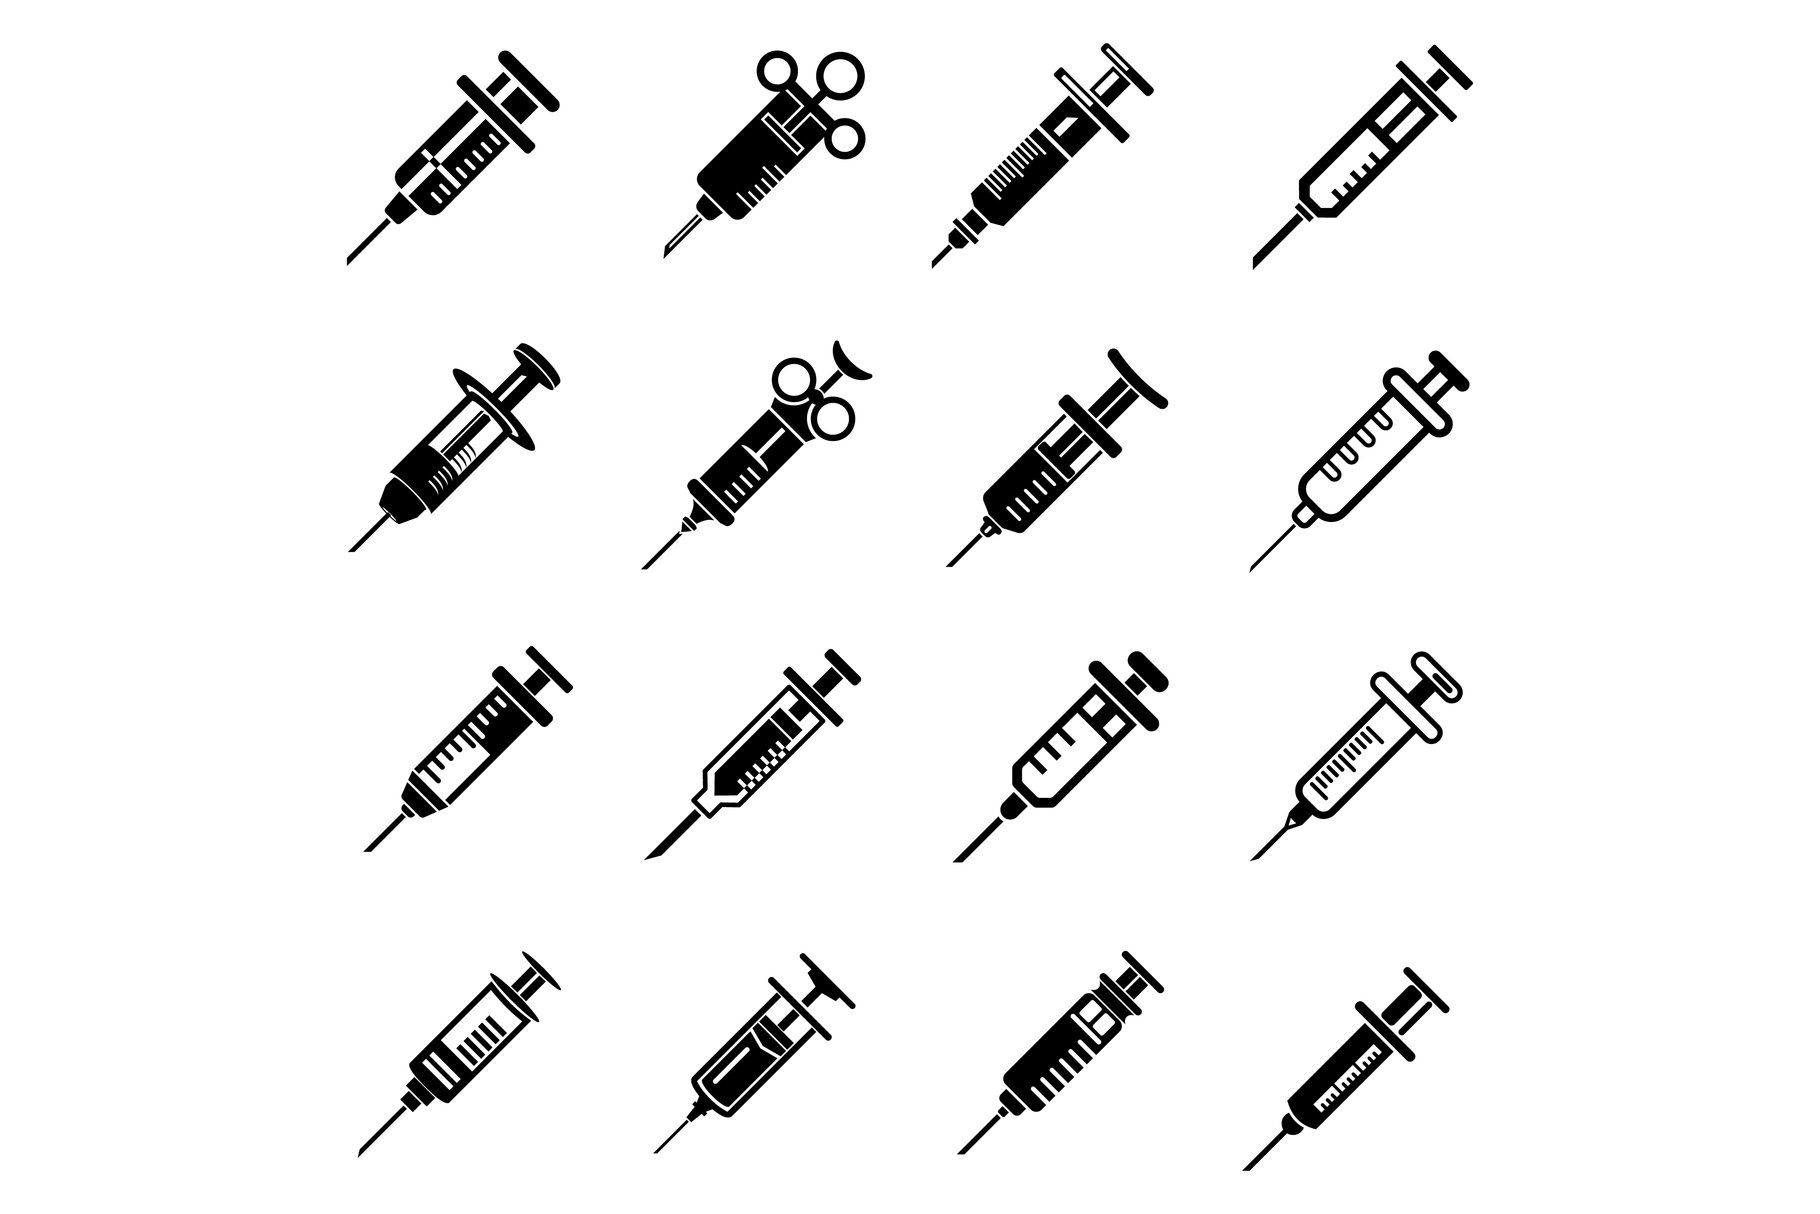 Syringe needle injection icons set cover image.